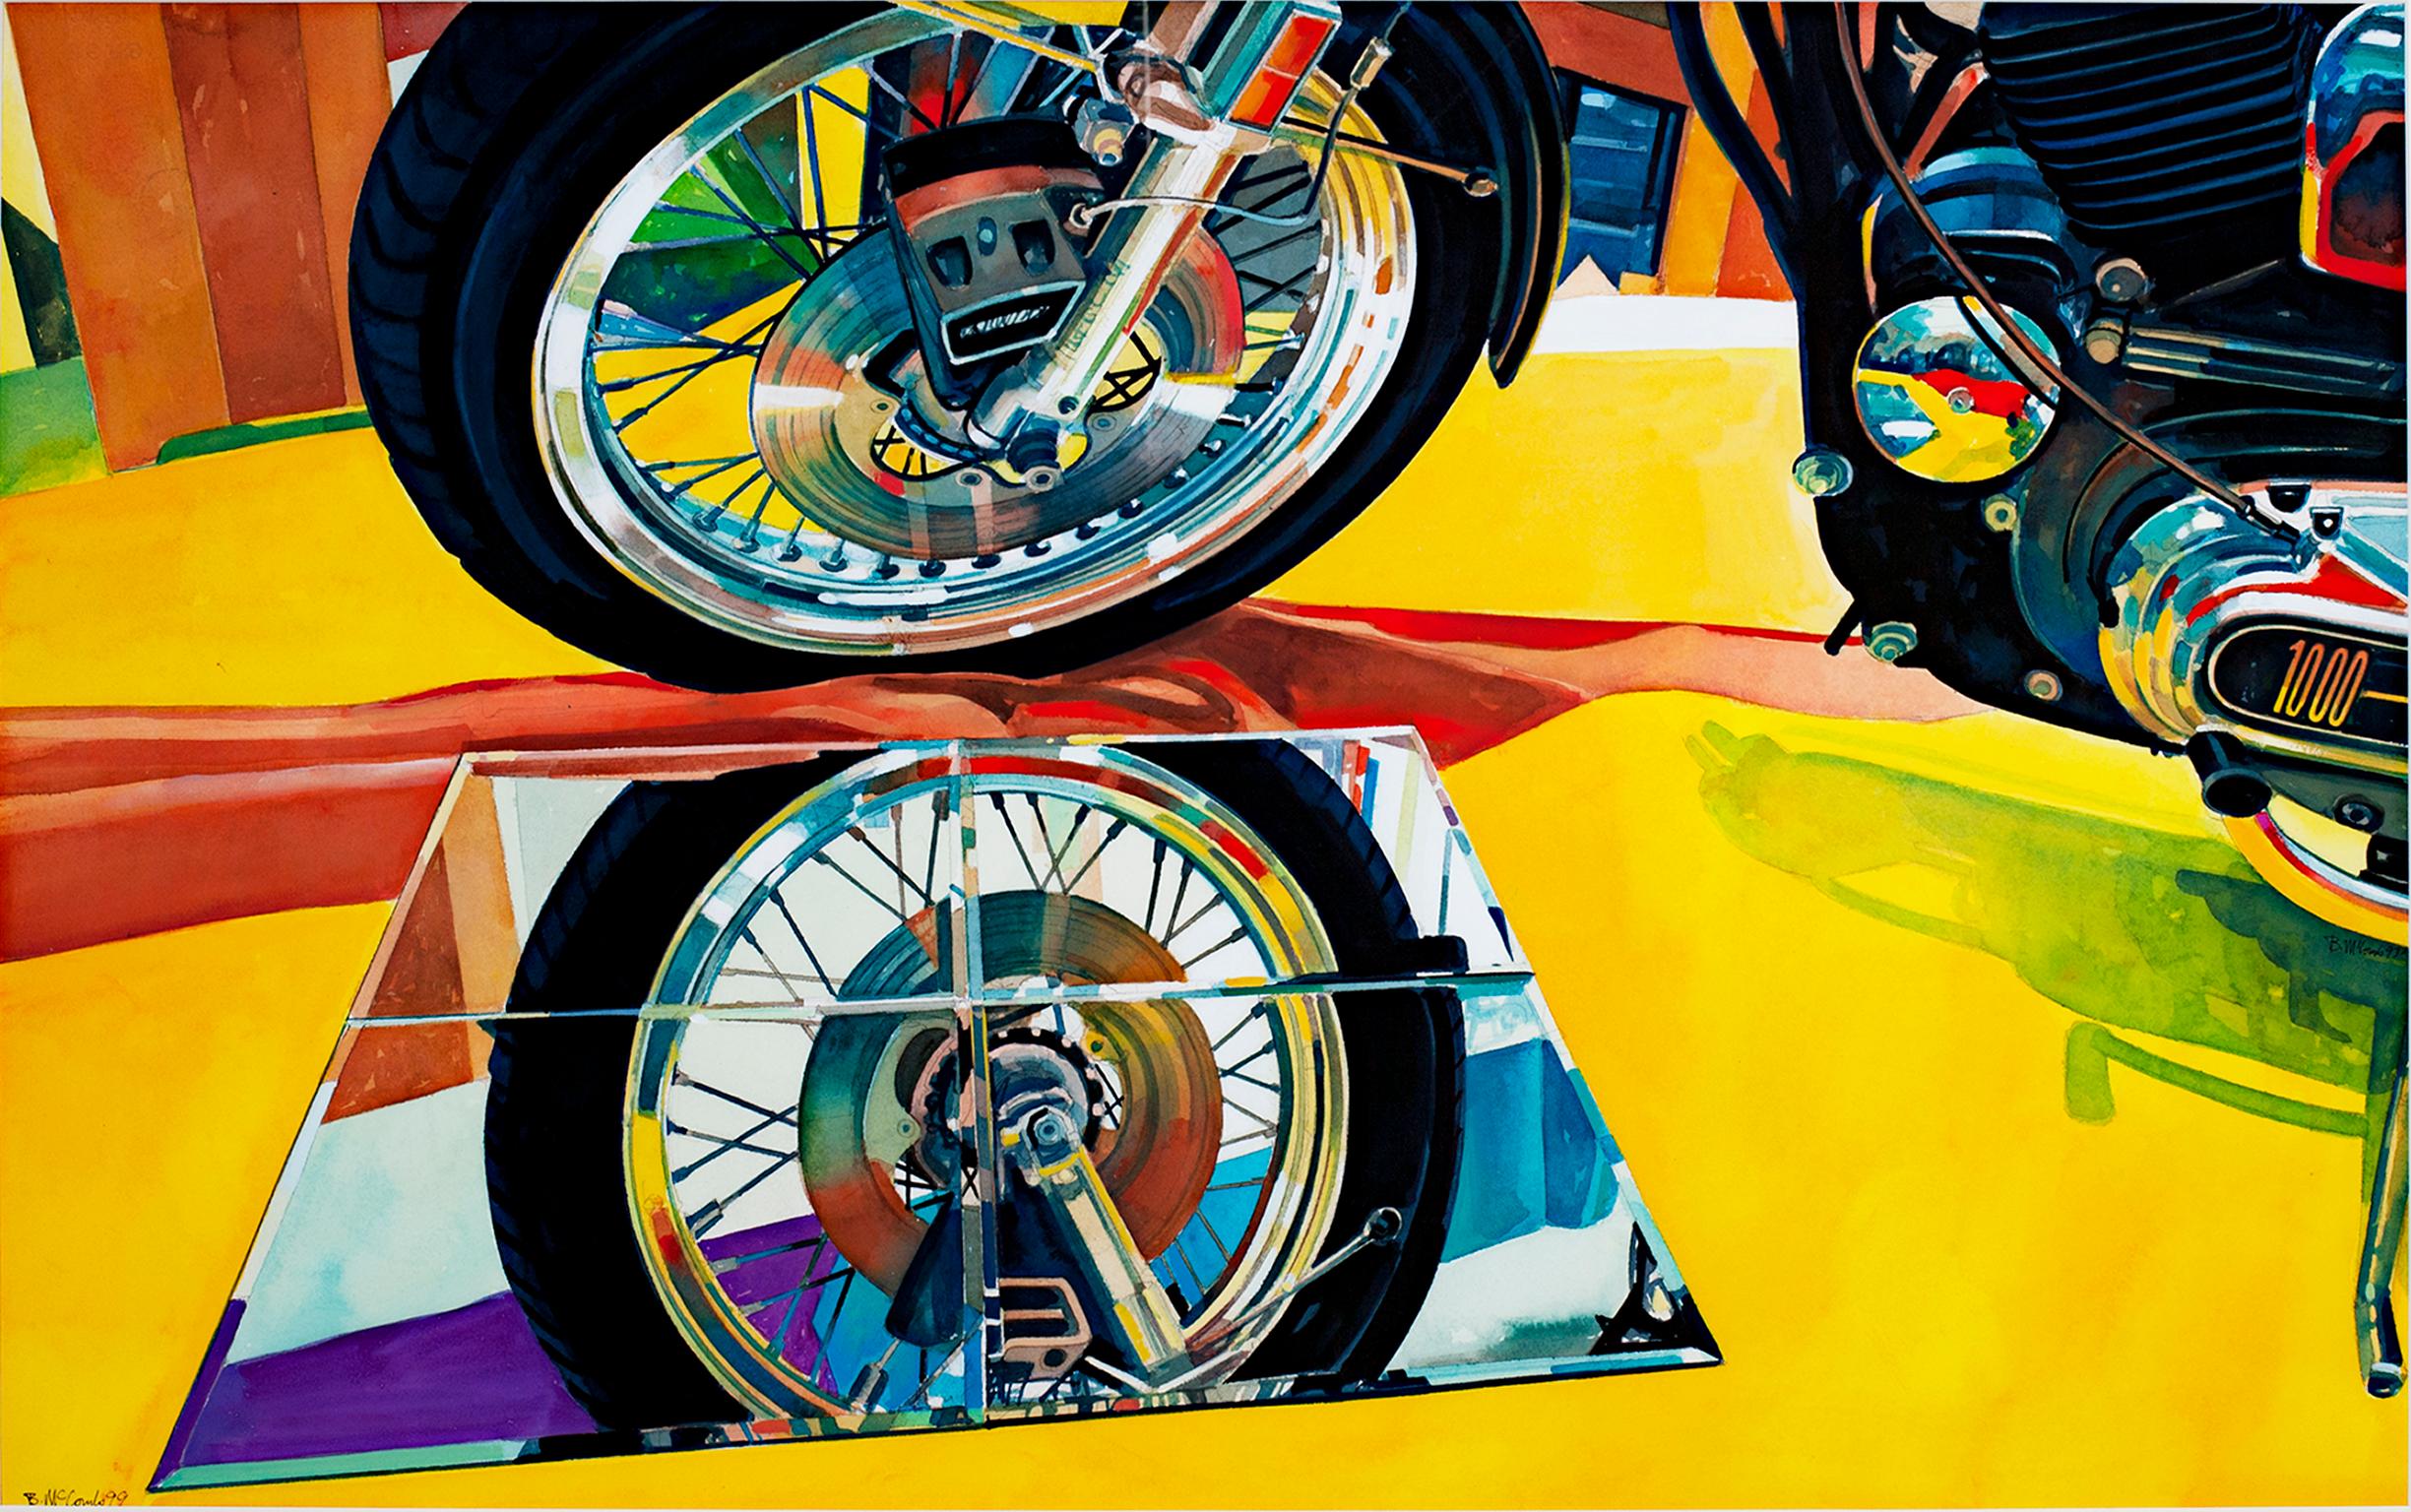 "Harley" ist ein Original-Aquarell von Bruce McCombs. Der Künstler hat das Werk unten links signiert. Es zeigt das Rad und den unteren Teil eines Harley Davidson Motorrads. Der Künstler verwendete hyperrealistische Techniken, um eine glaubwürdige